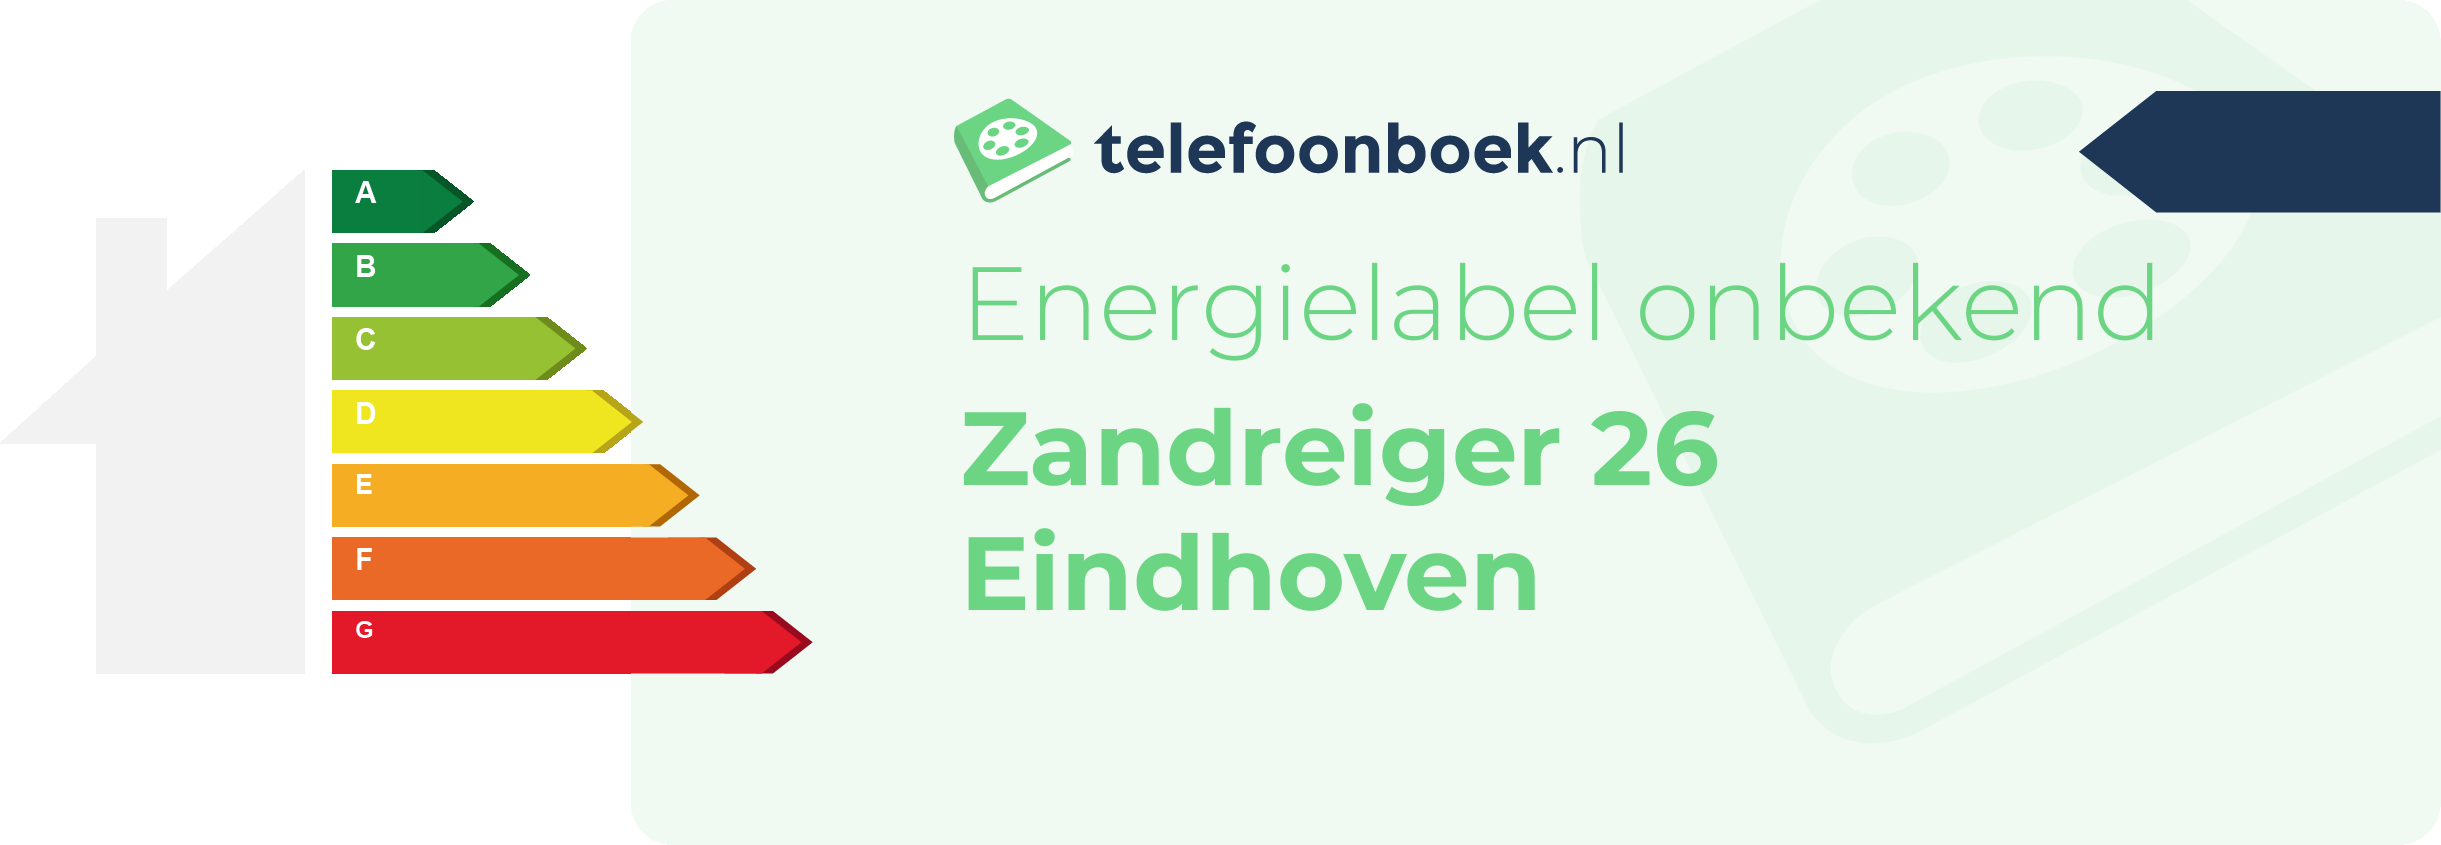 Energielabel Zandreiger 26 Eindhoven